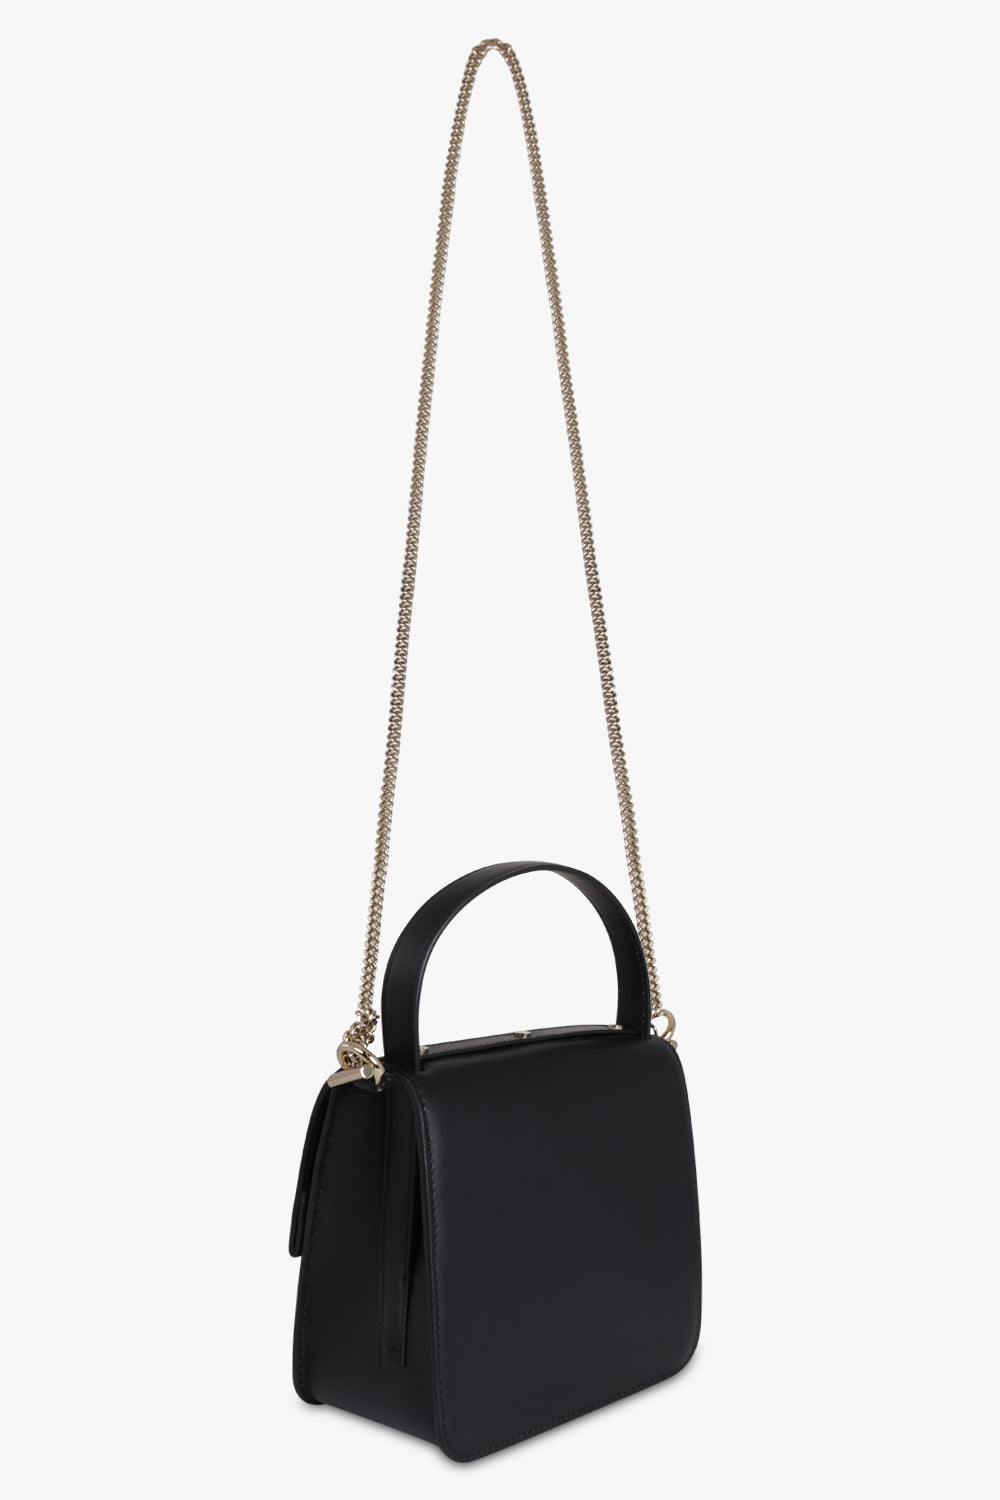 CHLOE BAGS Black Penelope Small Top Handle Bag | Black